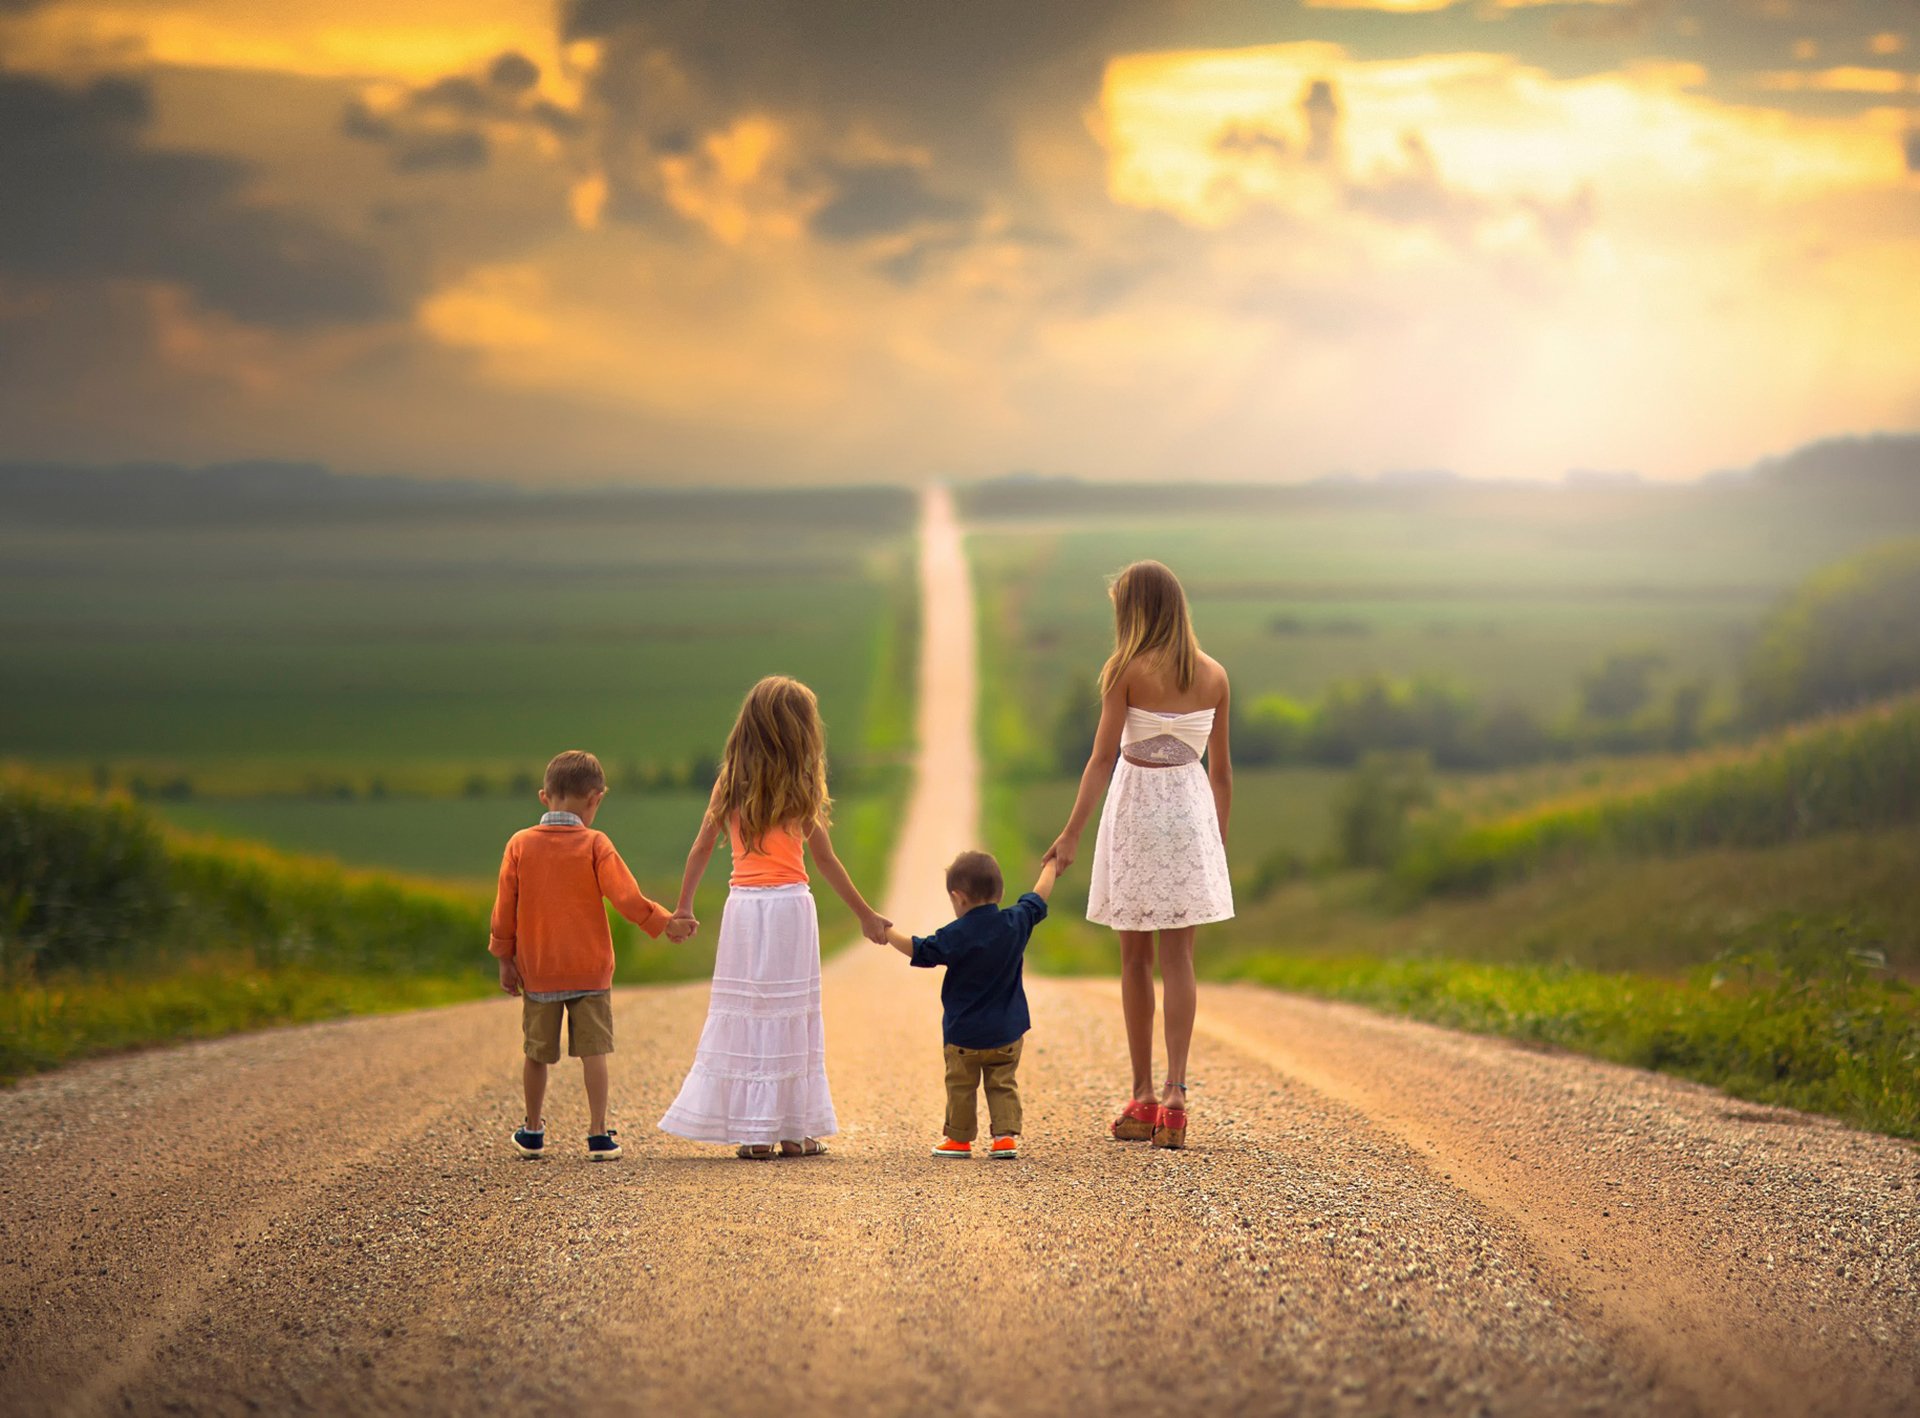 Видео счастливой жизни. Счастливое будущее детей. Счастливая дорога. Счастливая семья идет по дороге. Дети идут по дороге.